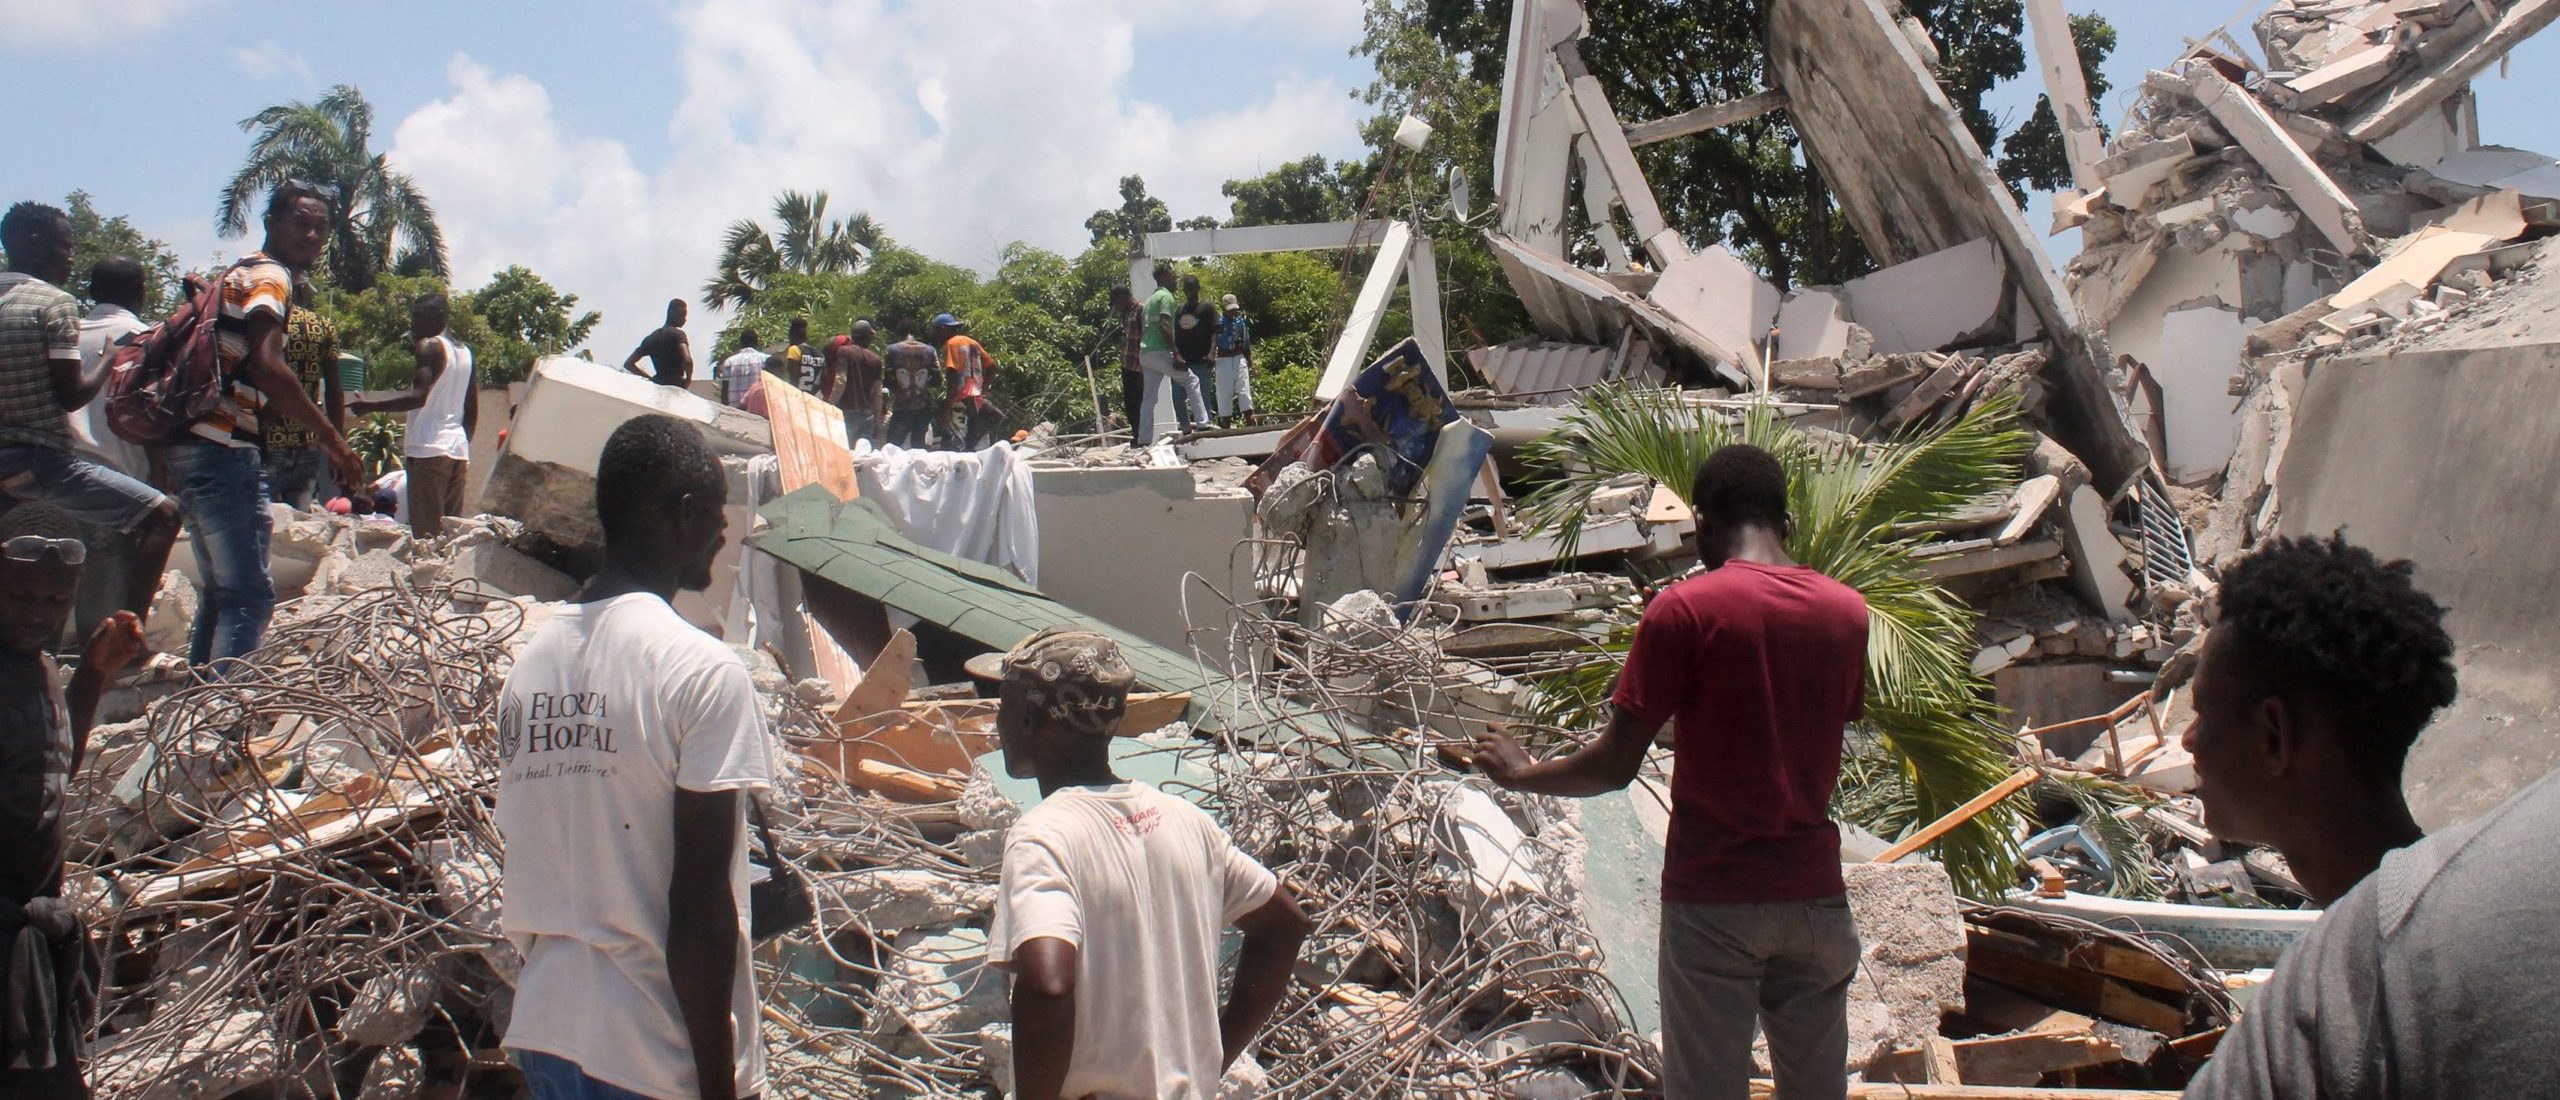 More Than 700 Dead As 7.2 Earthquake Hits Haiti